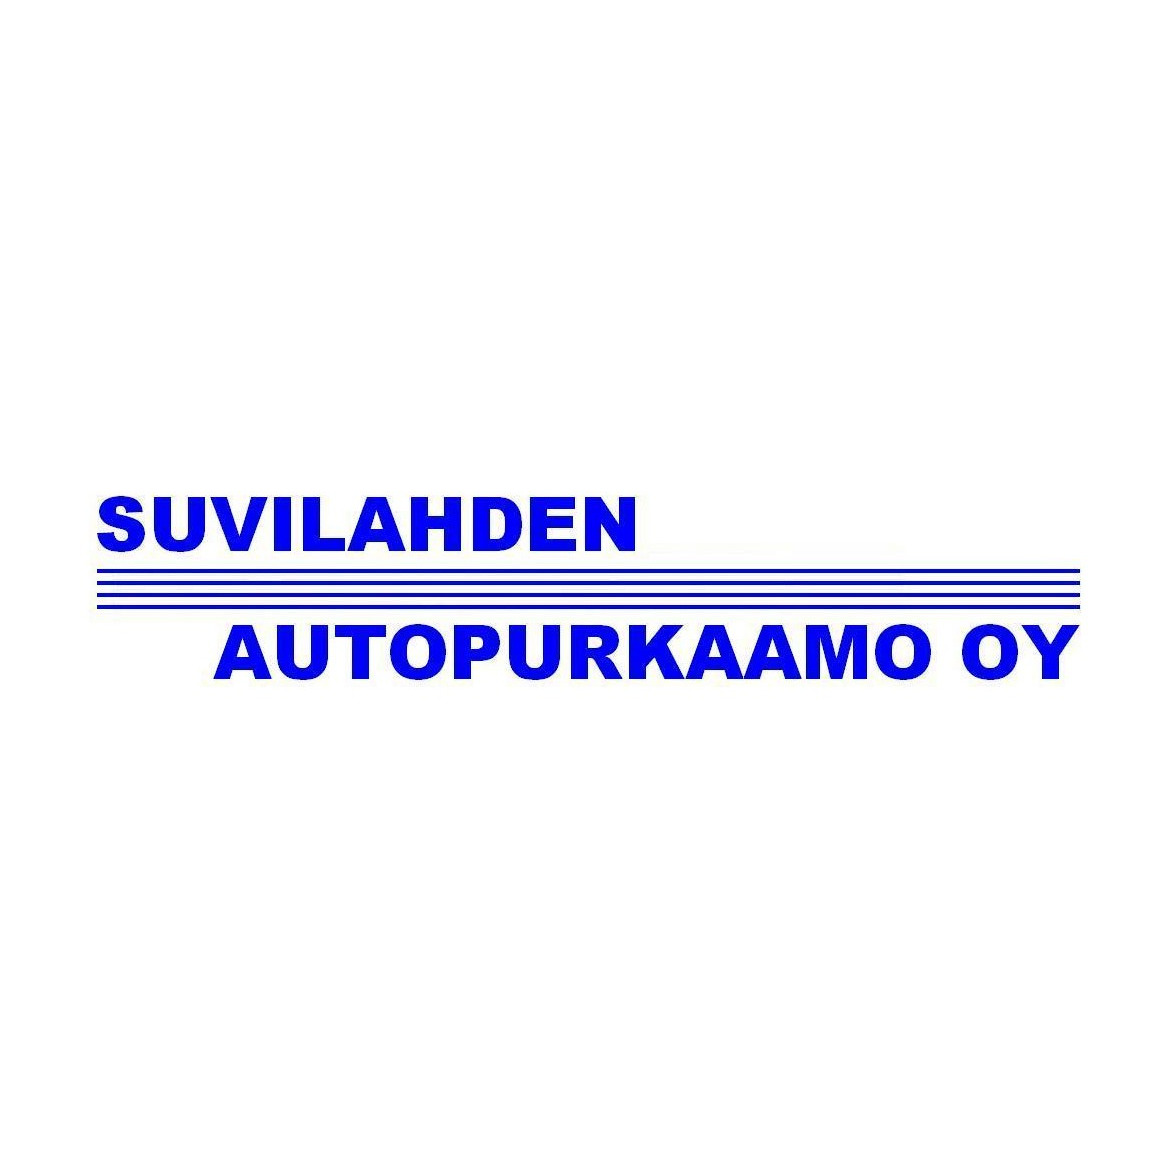 Suvilahden Autopurkaamo Oy Logo